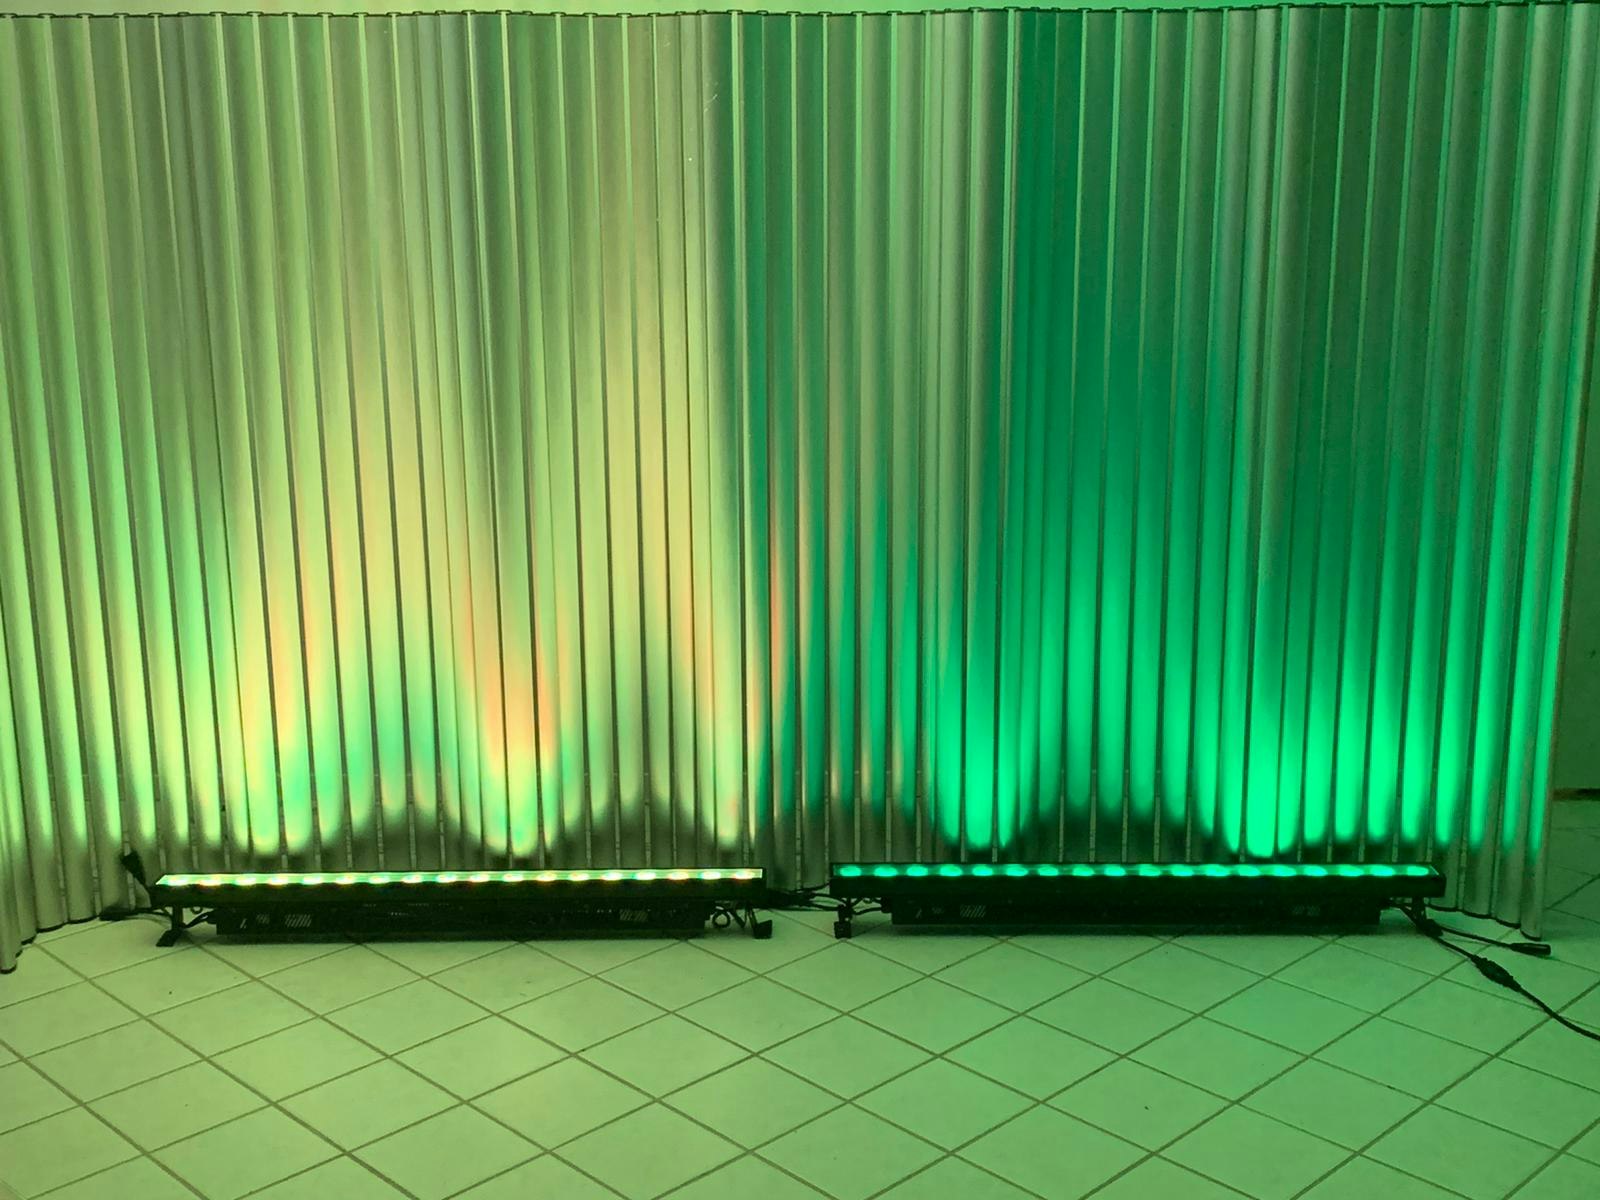 LED vägg i aluminium - 3 till 9 meter - Avdelare scen & utställning